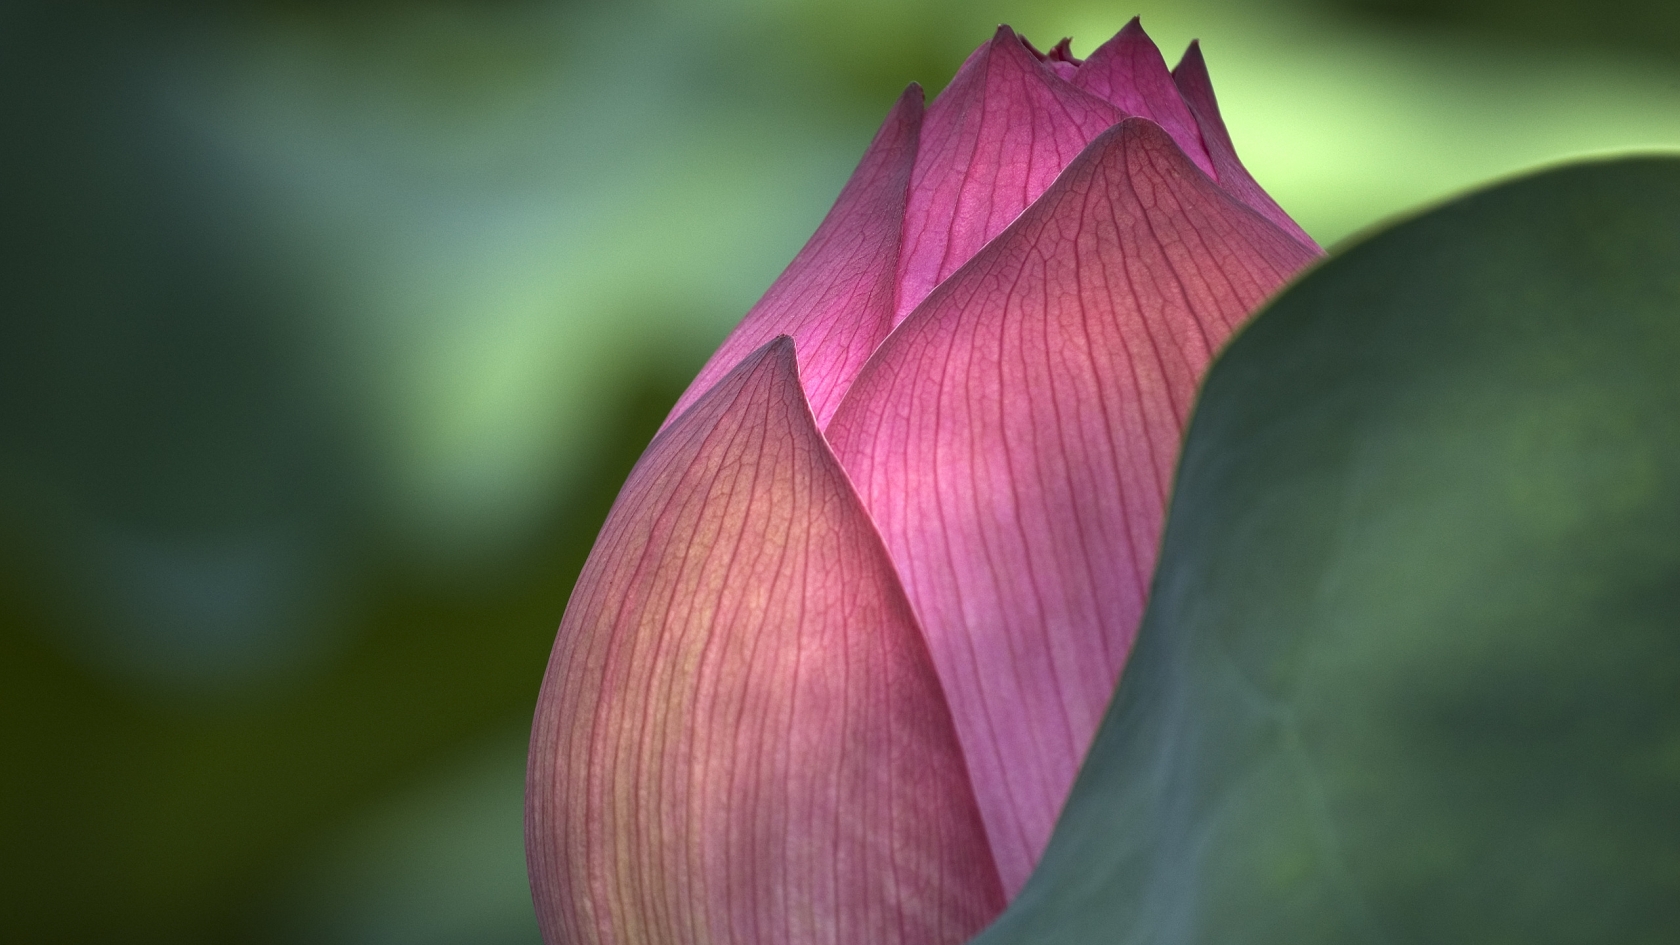 Lotus Flower for 1680 x 945 HDTV resolution